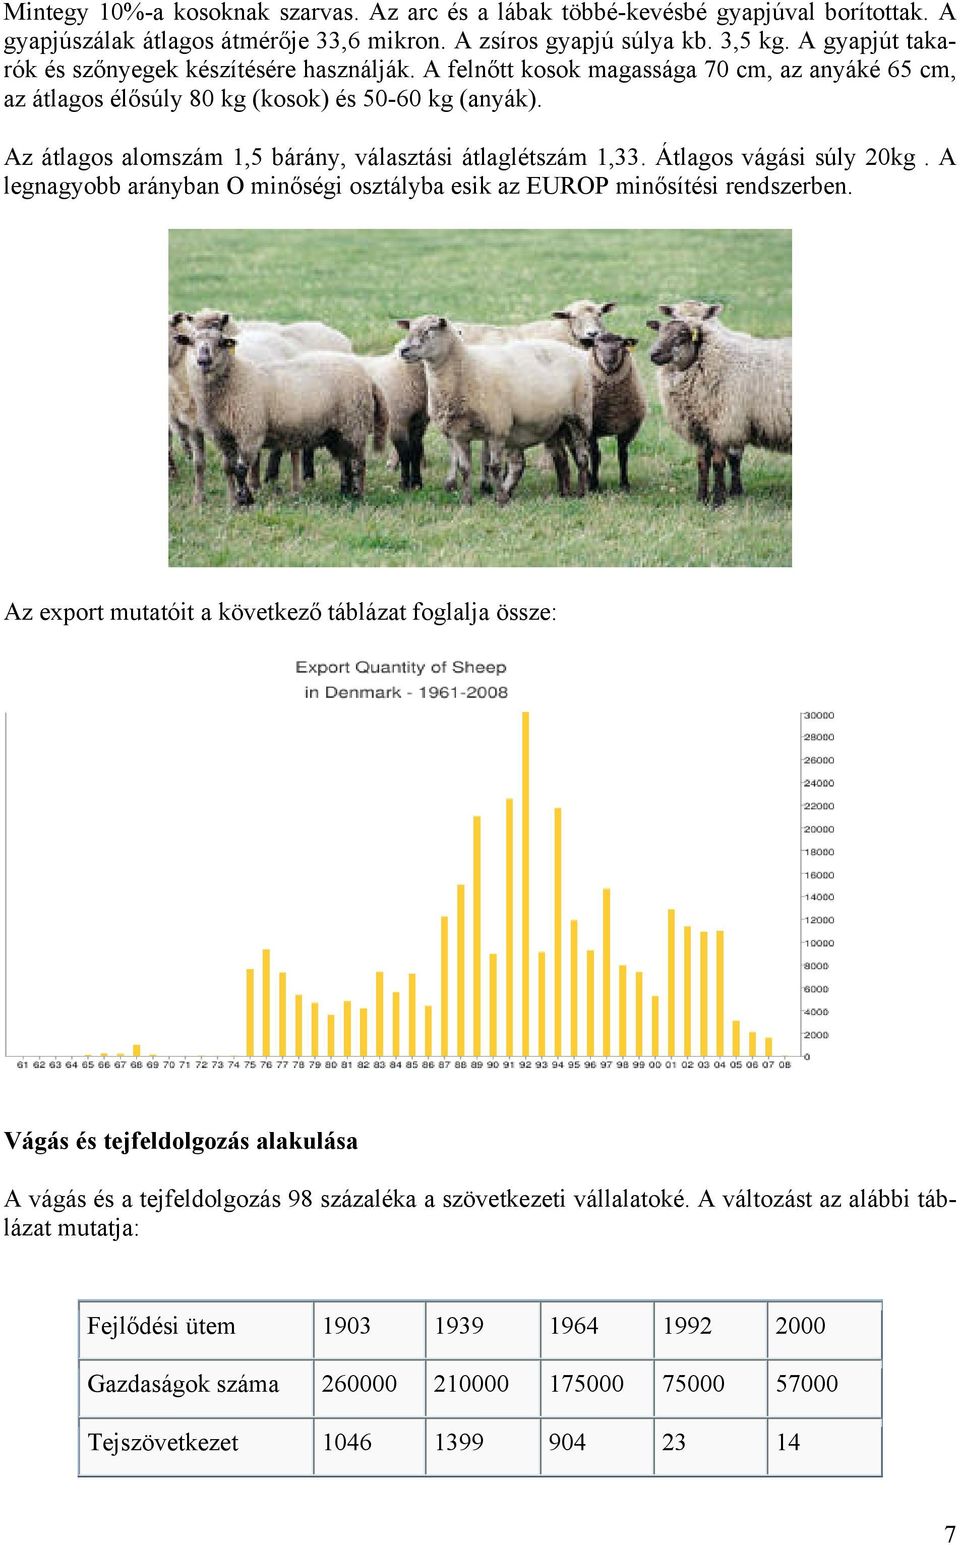 Az átlagos alomszám 1,5 bárány, választási átlaglétszám 1,33. Átlagos vágási súly 20kg. A legnagyobb arányban O minőségi osztályba esik az EUROP minősítési rendszerben.